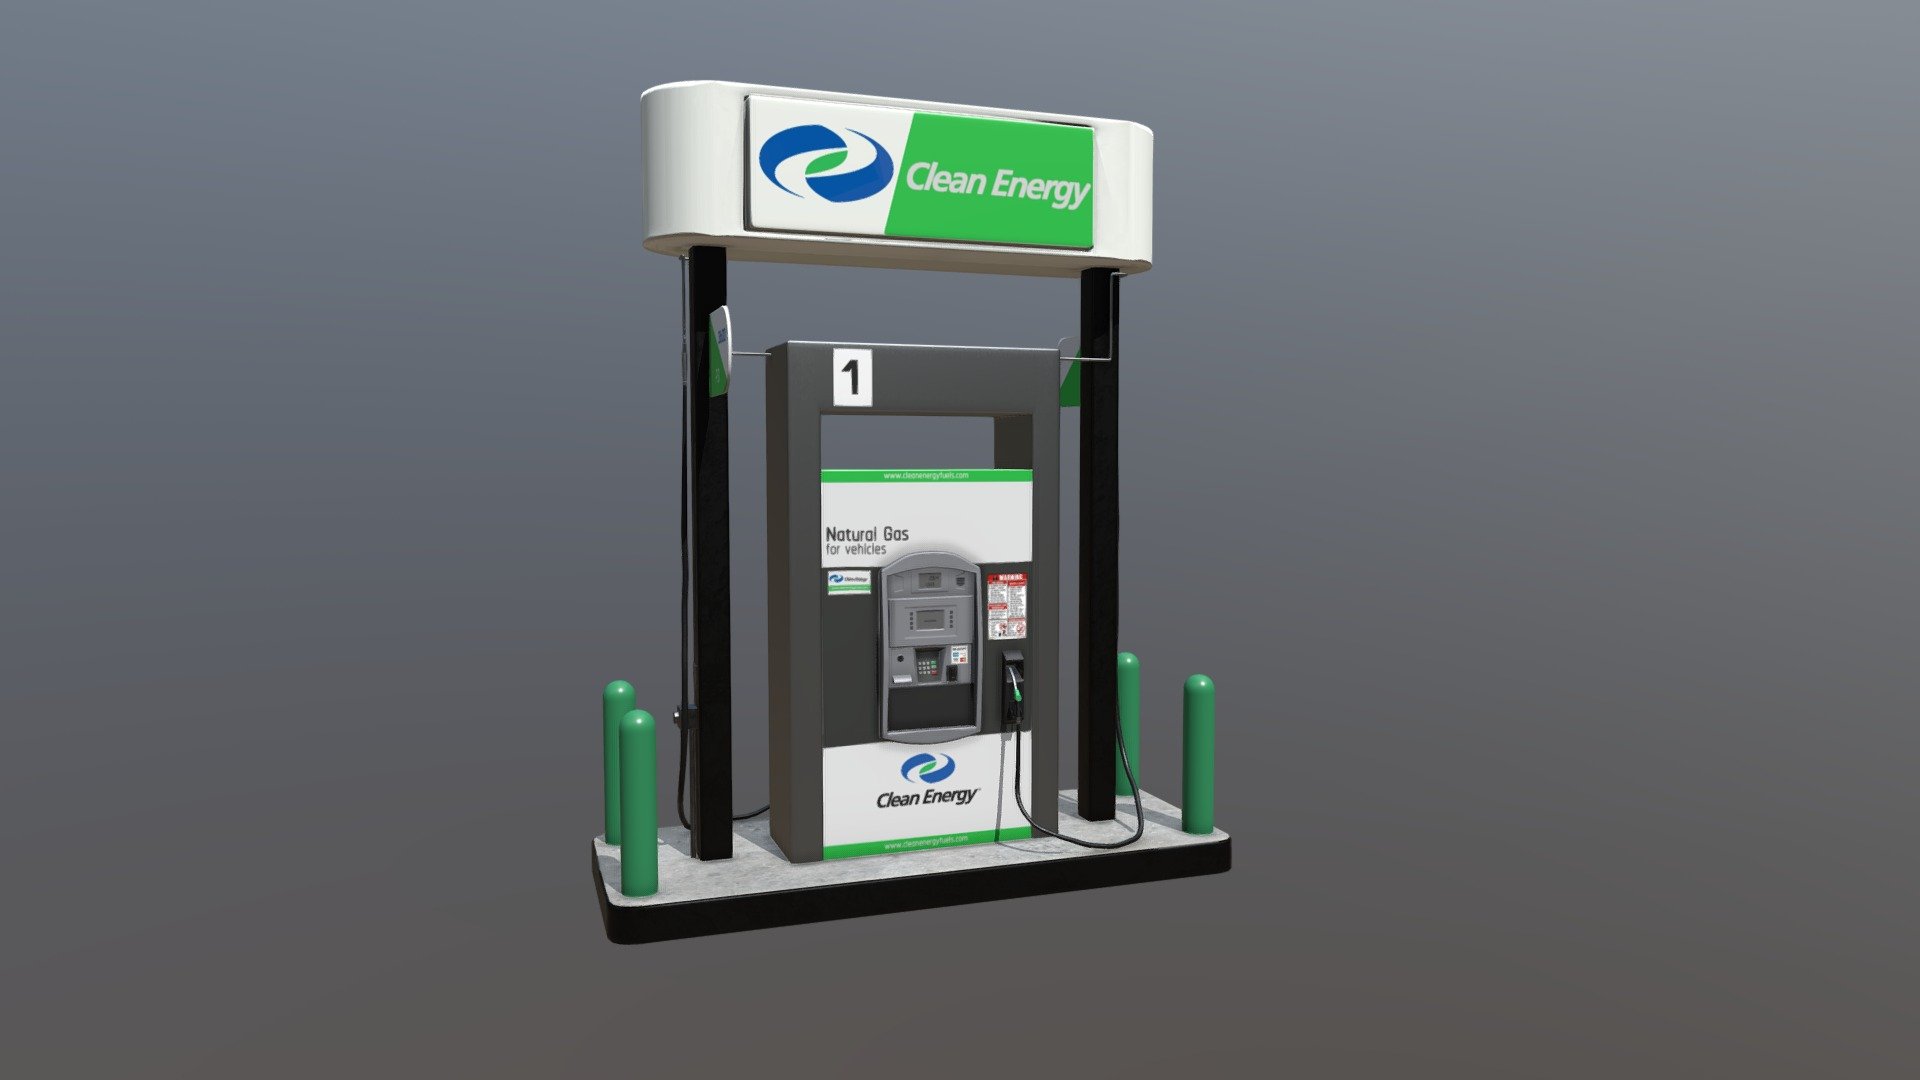 Clean Energy gas pump - Clean Energy Gas Pump - 3D model by Keshawn Jenkins (@KeshawnJenkins) 3d model